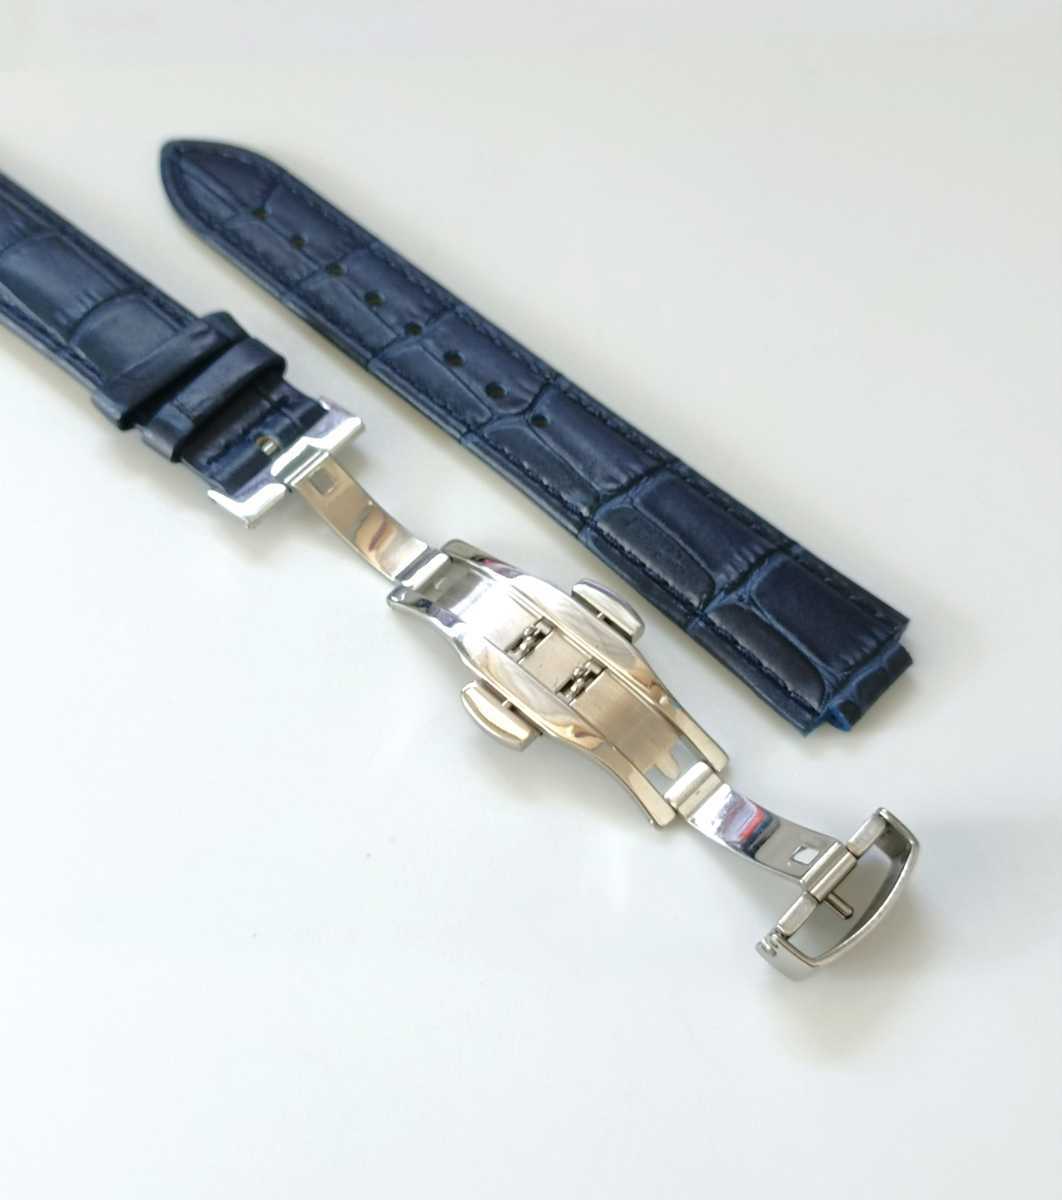 18mm 腕時計 凸型 修理交換用 レザー 革ベルト ネイビーブルー Dバックル付属 【対応】カルティエ バロンブルー 